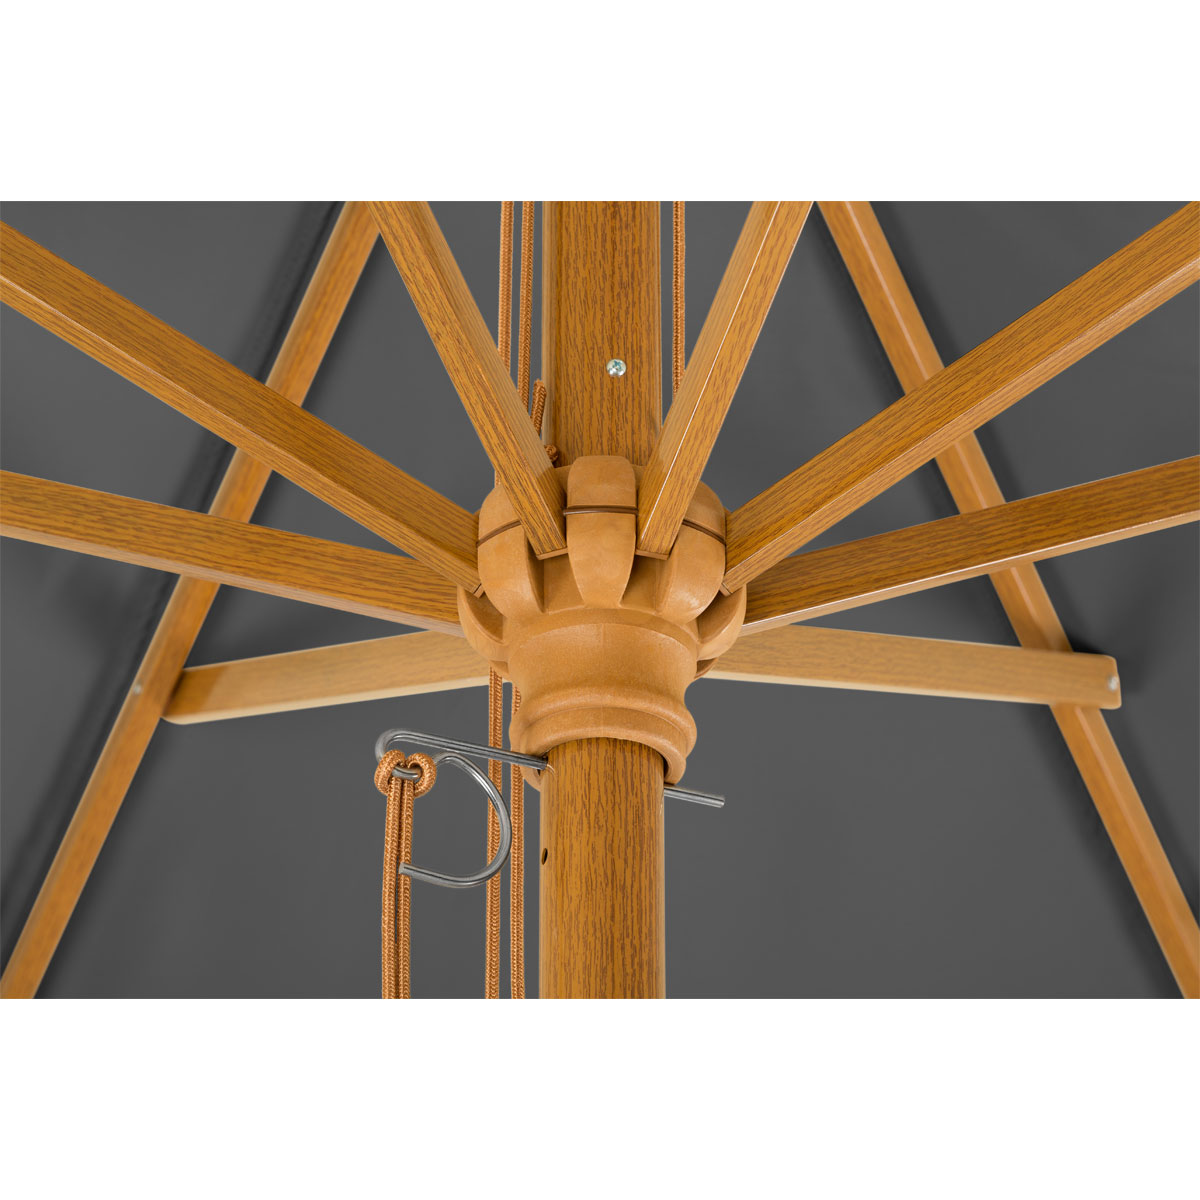 Schneider Durchmesser | 39643 cm Sonnenschirm Schirme Malaga 300 anthrazit